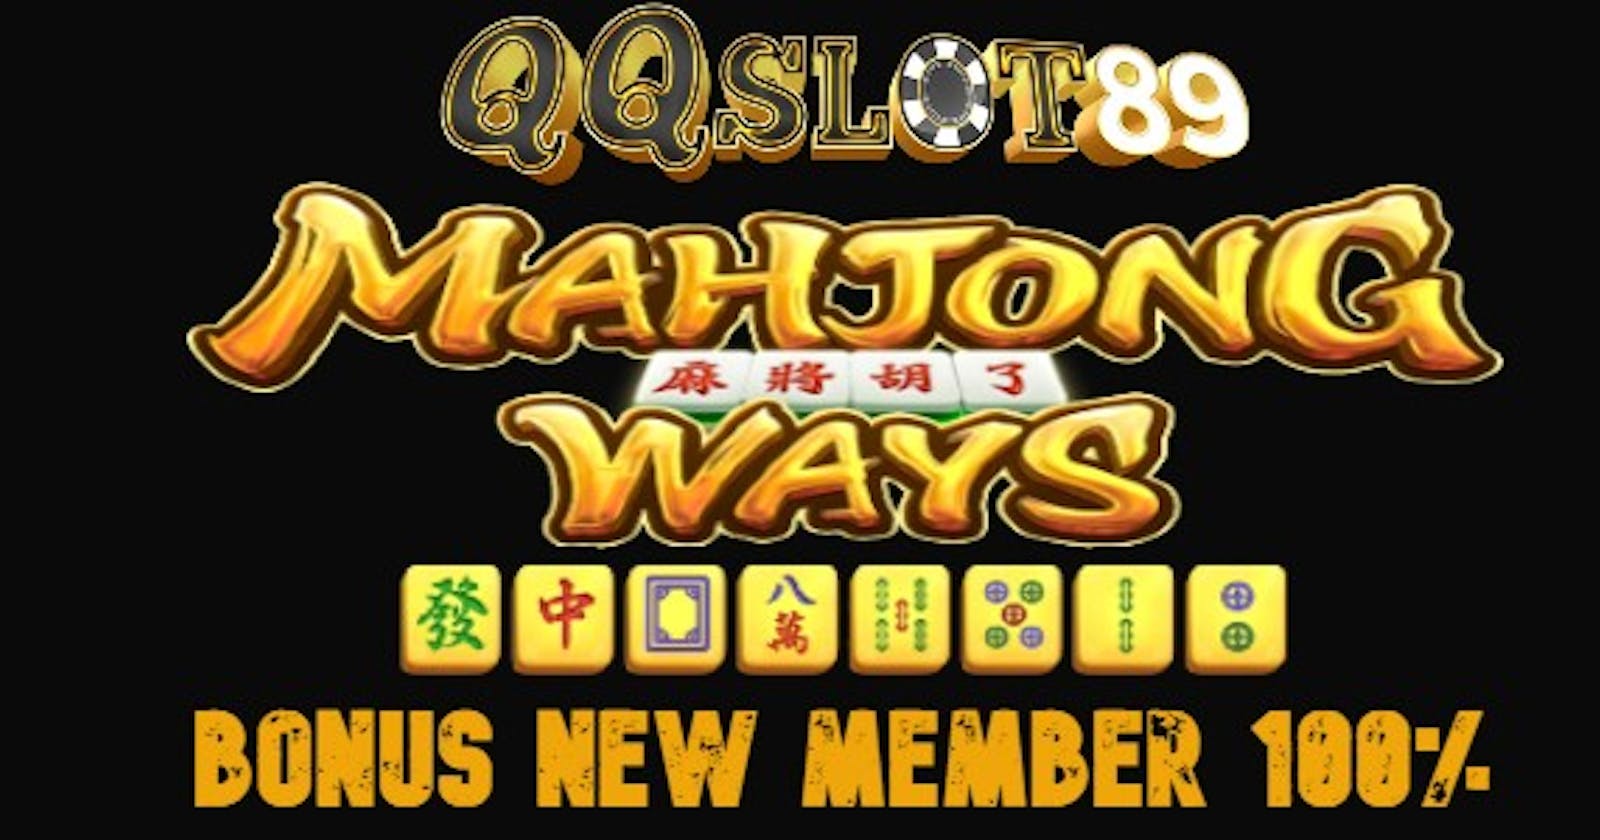 Mahjong Ways 2 | Game Slot Provider Pg Soft Gampang Menang 100% - Qqslot89